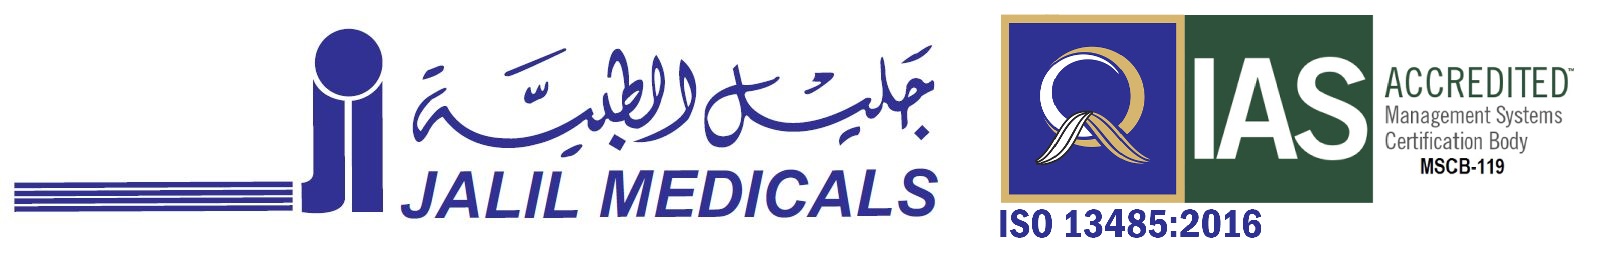 Jalil Medicals